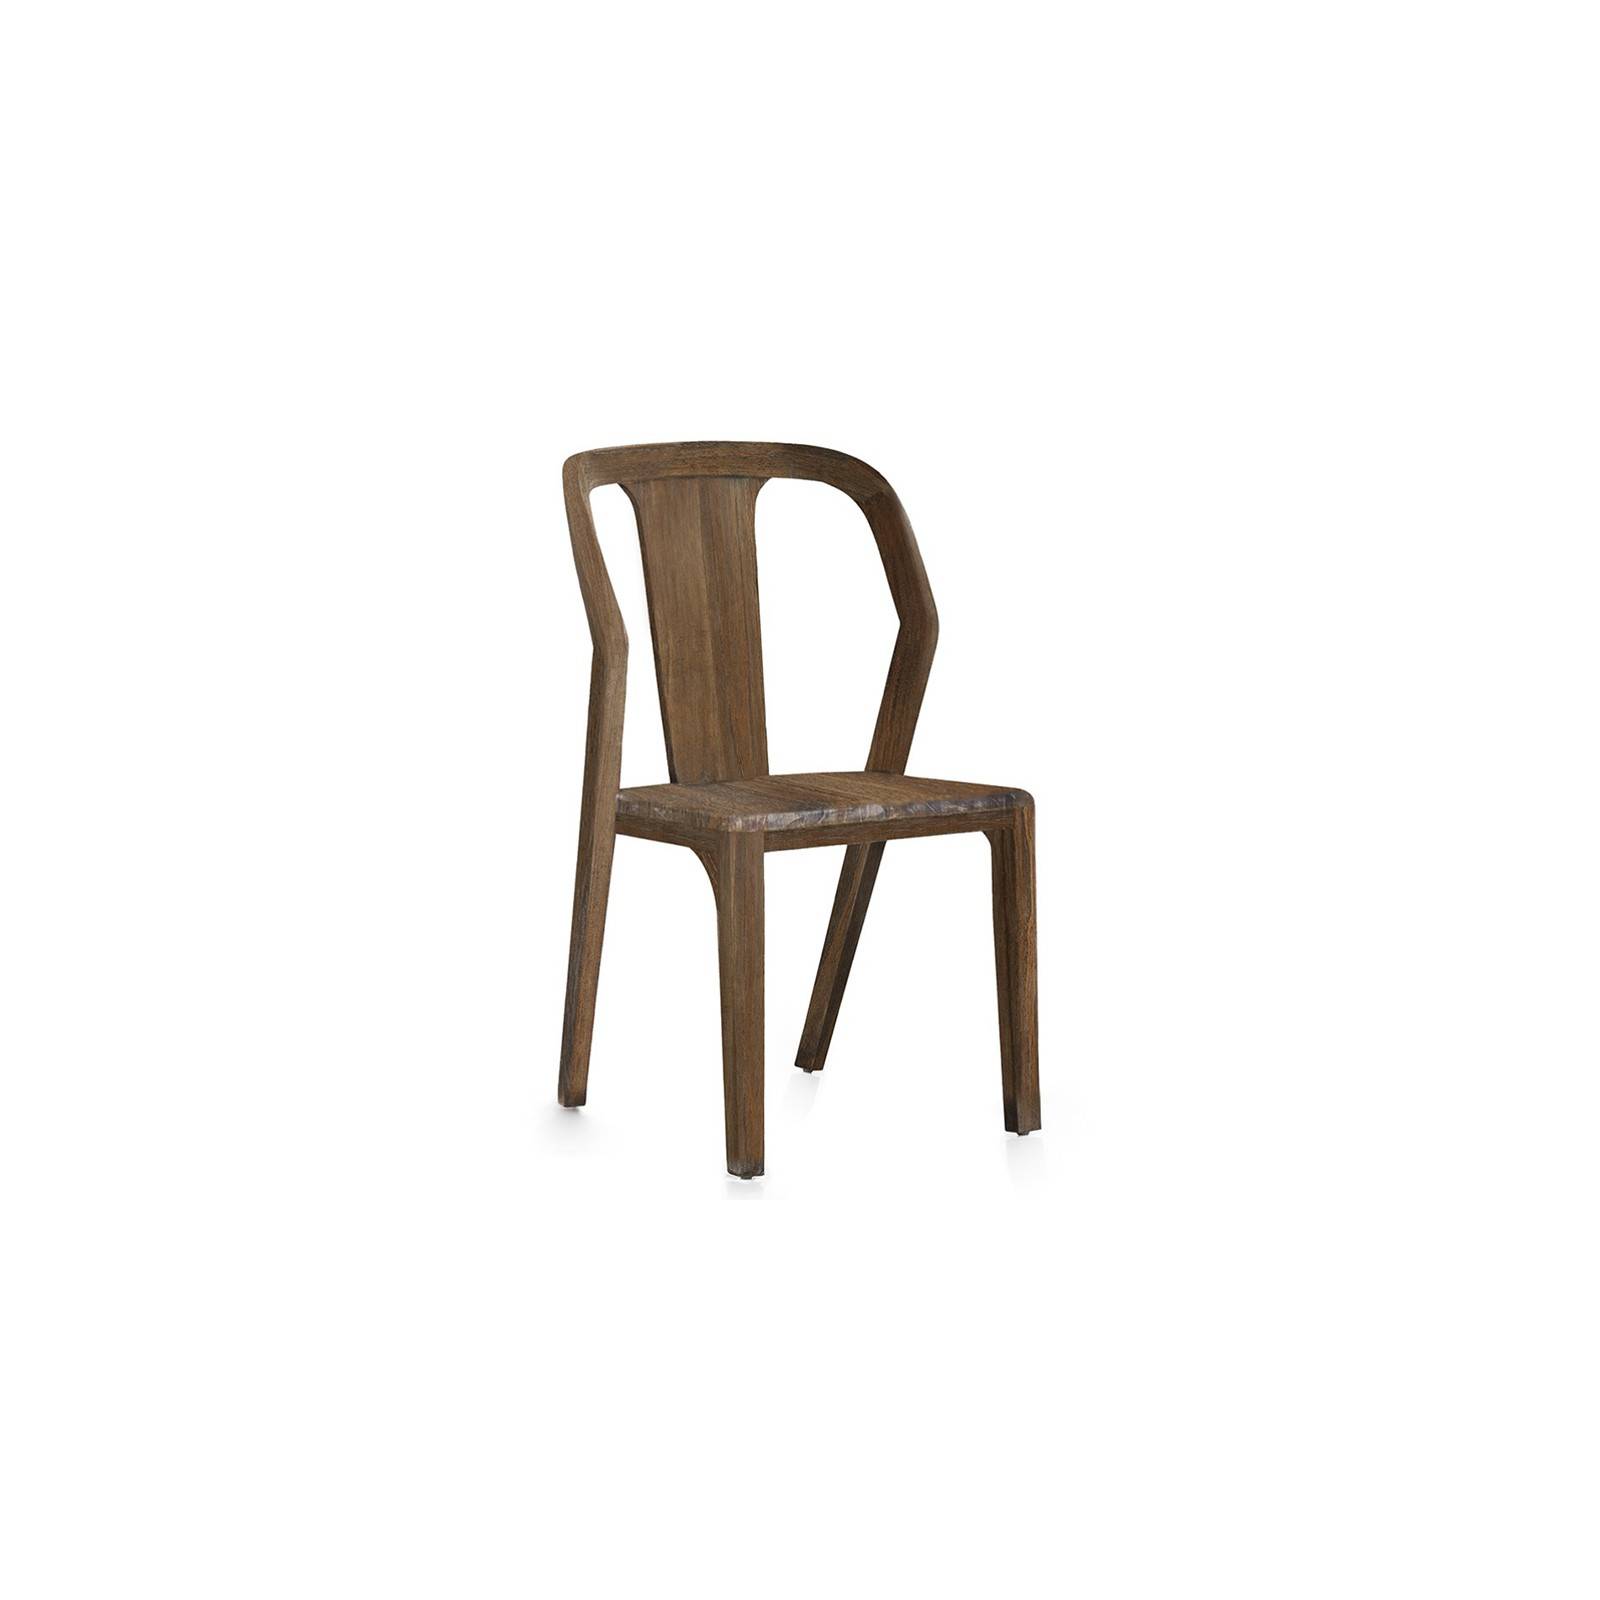 Chaise en bois exotique. Collection de meubles Terranova Mindi